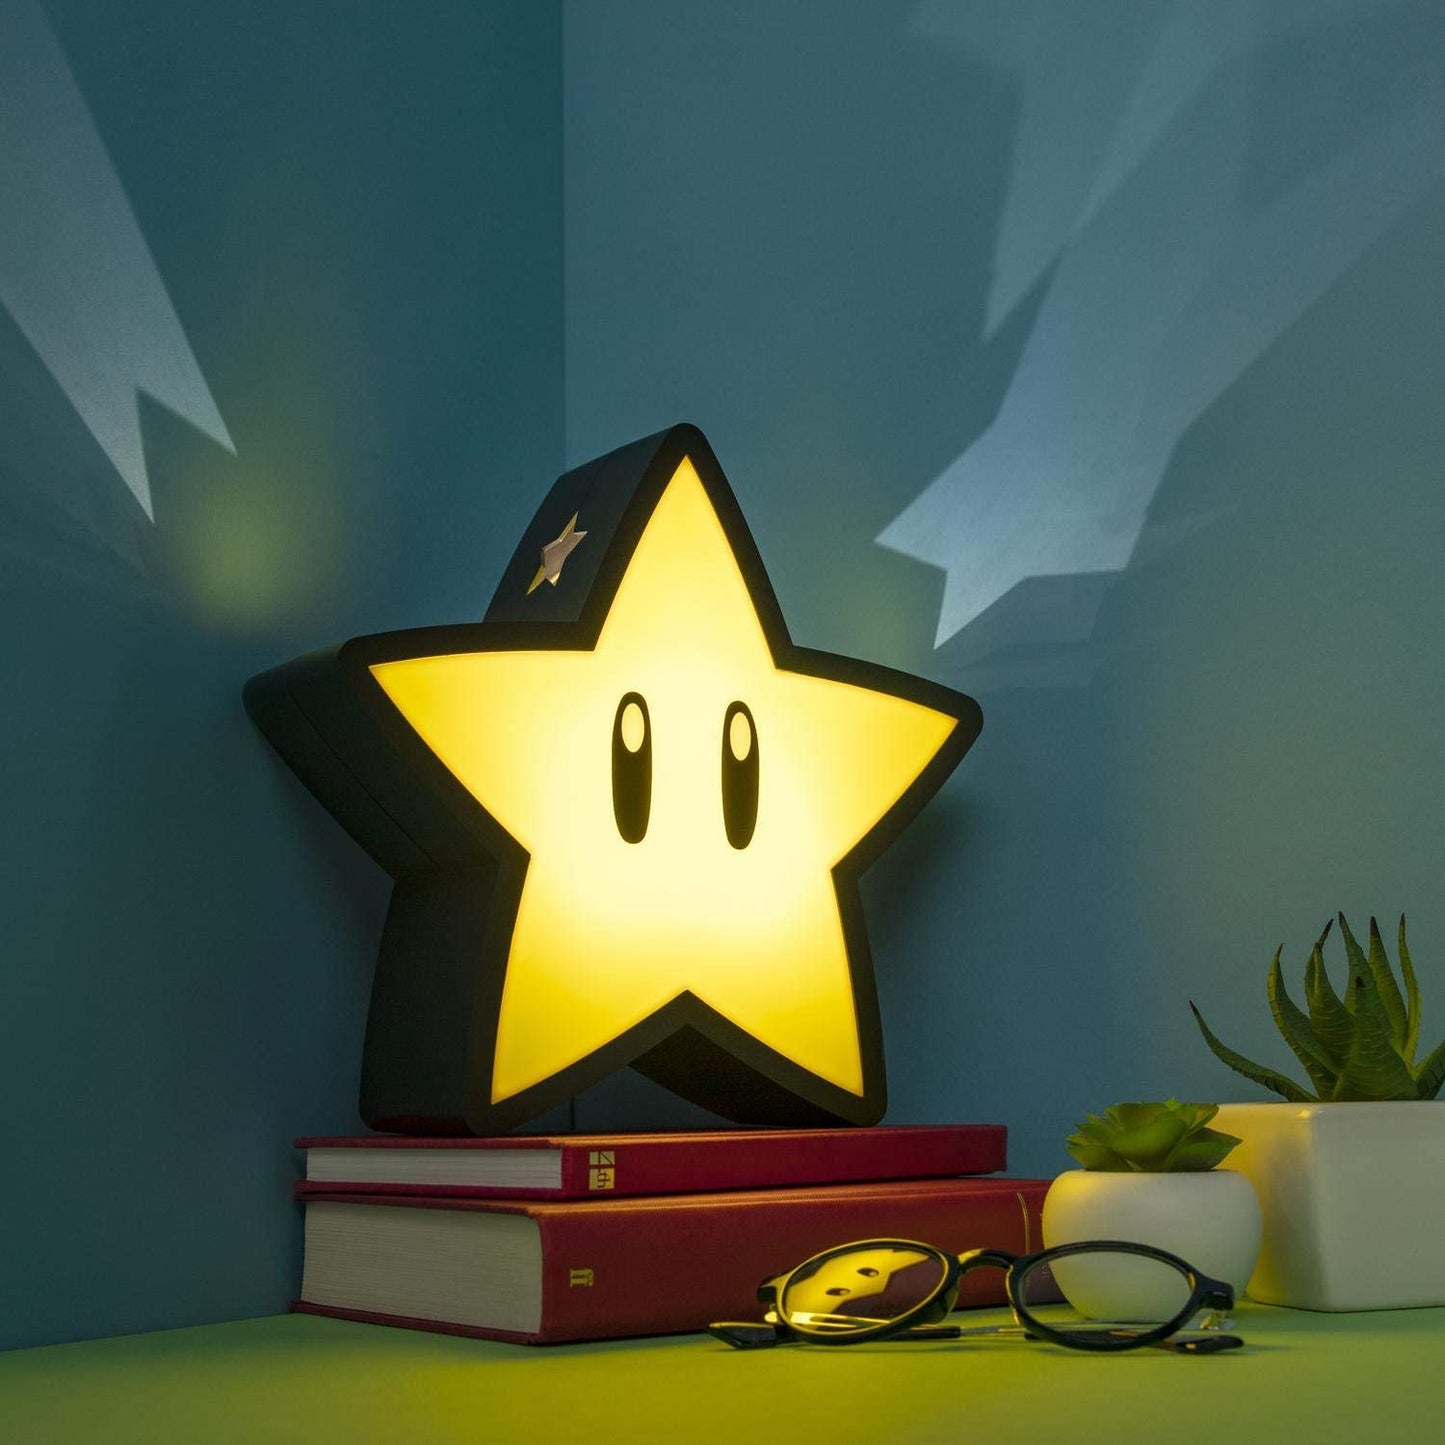 Paladone Super Star Projector Lamp - Super Mario Decorative Light